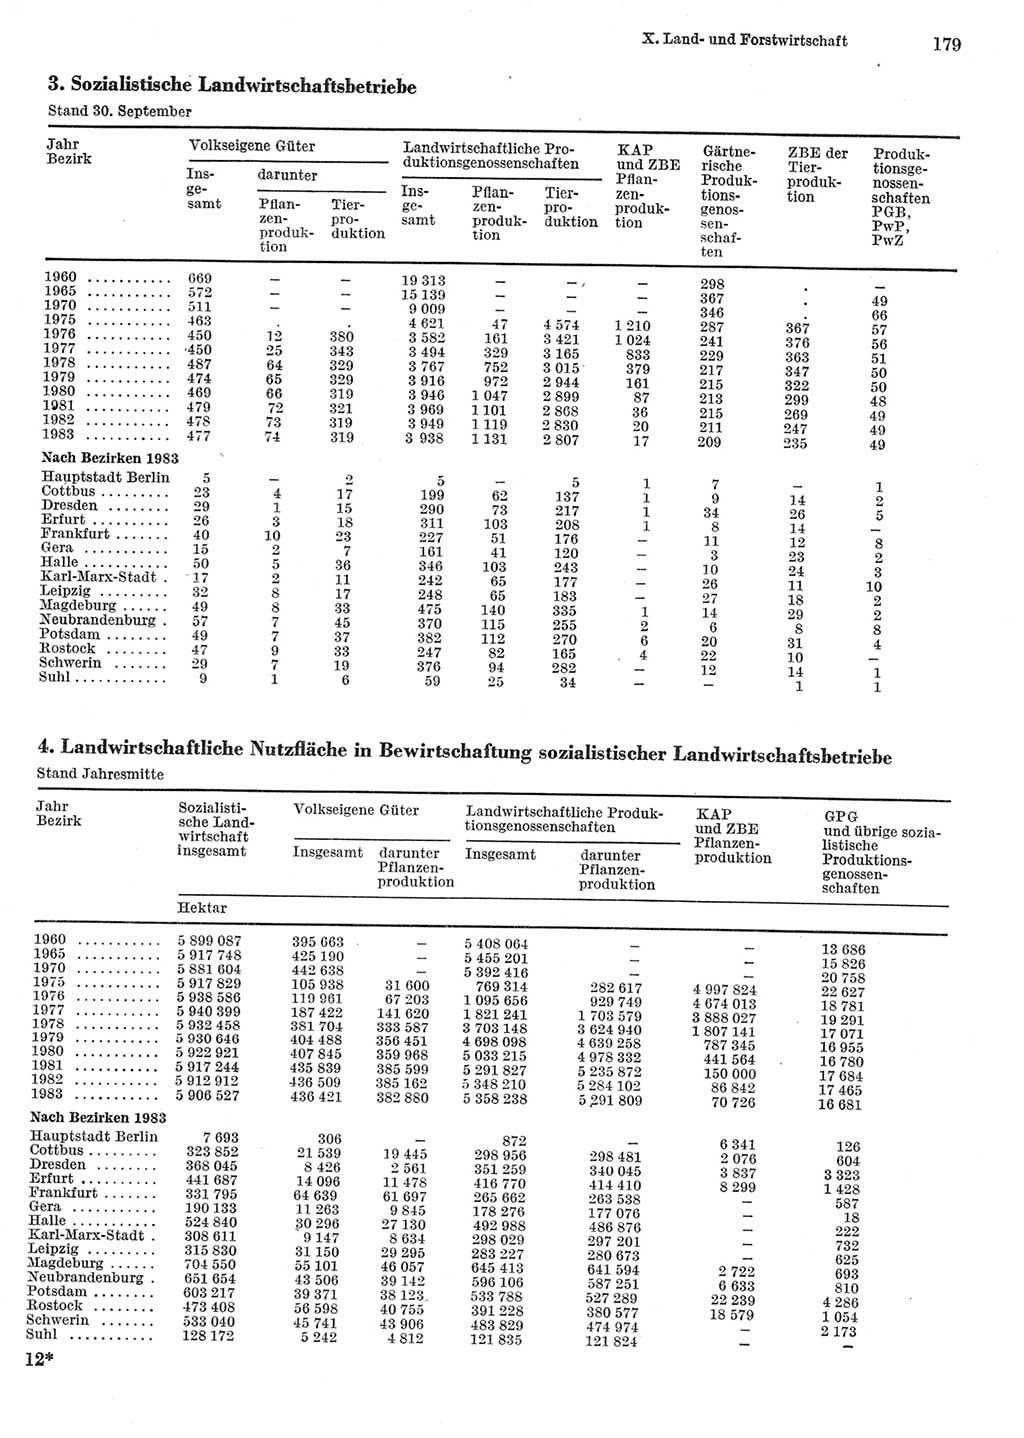 Statistisches Jahrbuch der Deutschen Demokratischen Republik (DDR) 1984, Seite 179 (Stat. Jb. DDR 1984, S. 179)